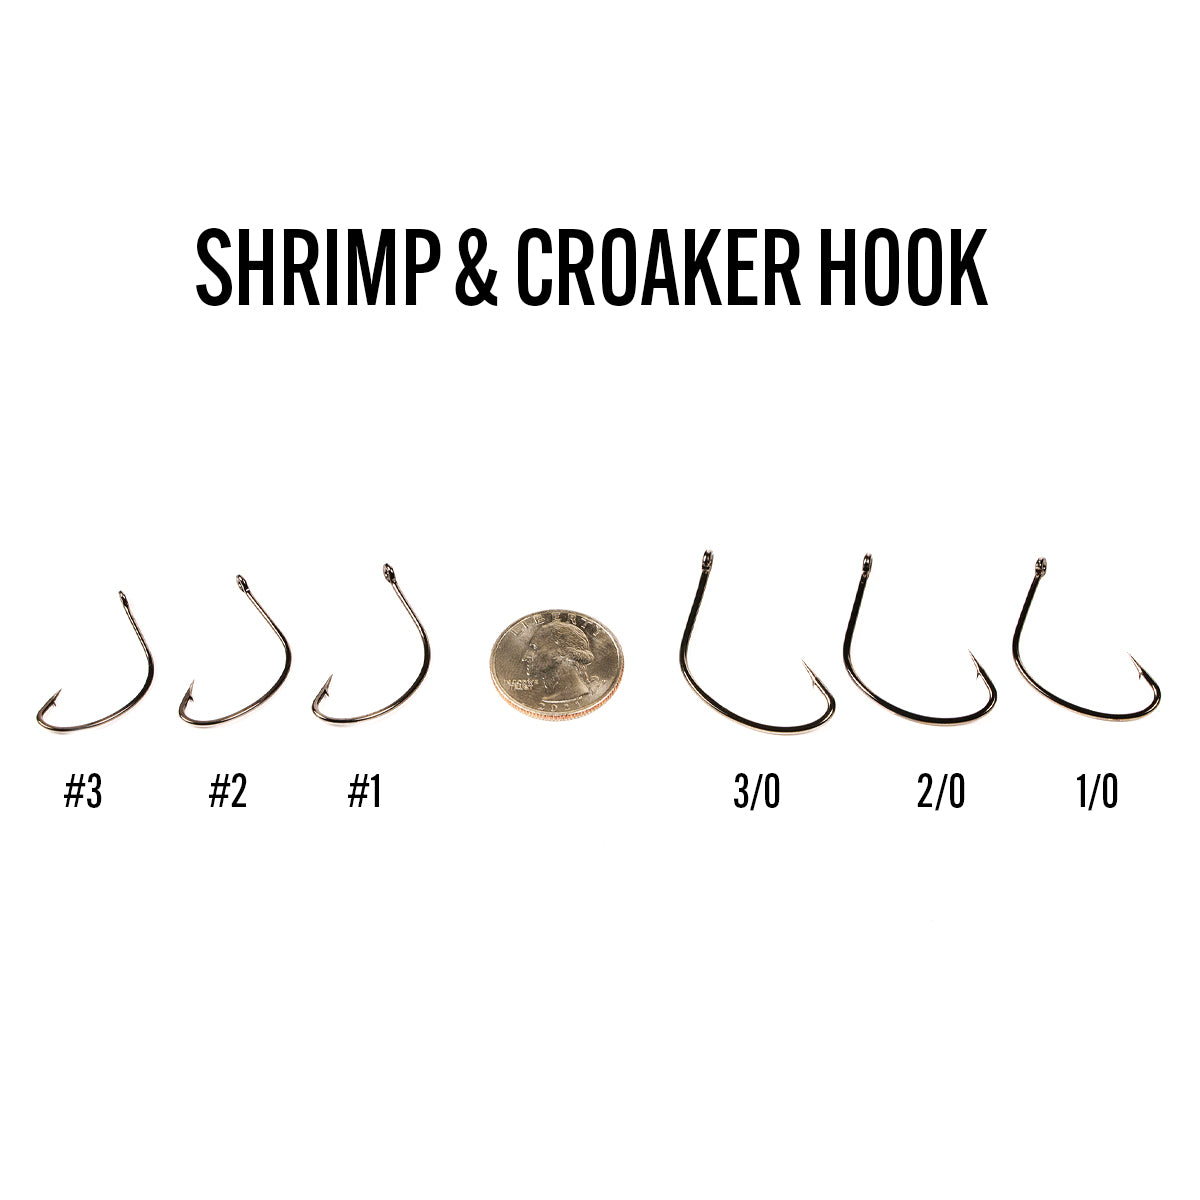 6th Sense Fishing Hooks - Terminal Tackle - Shrimp & Croaker Hook #2 (8pk)